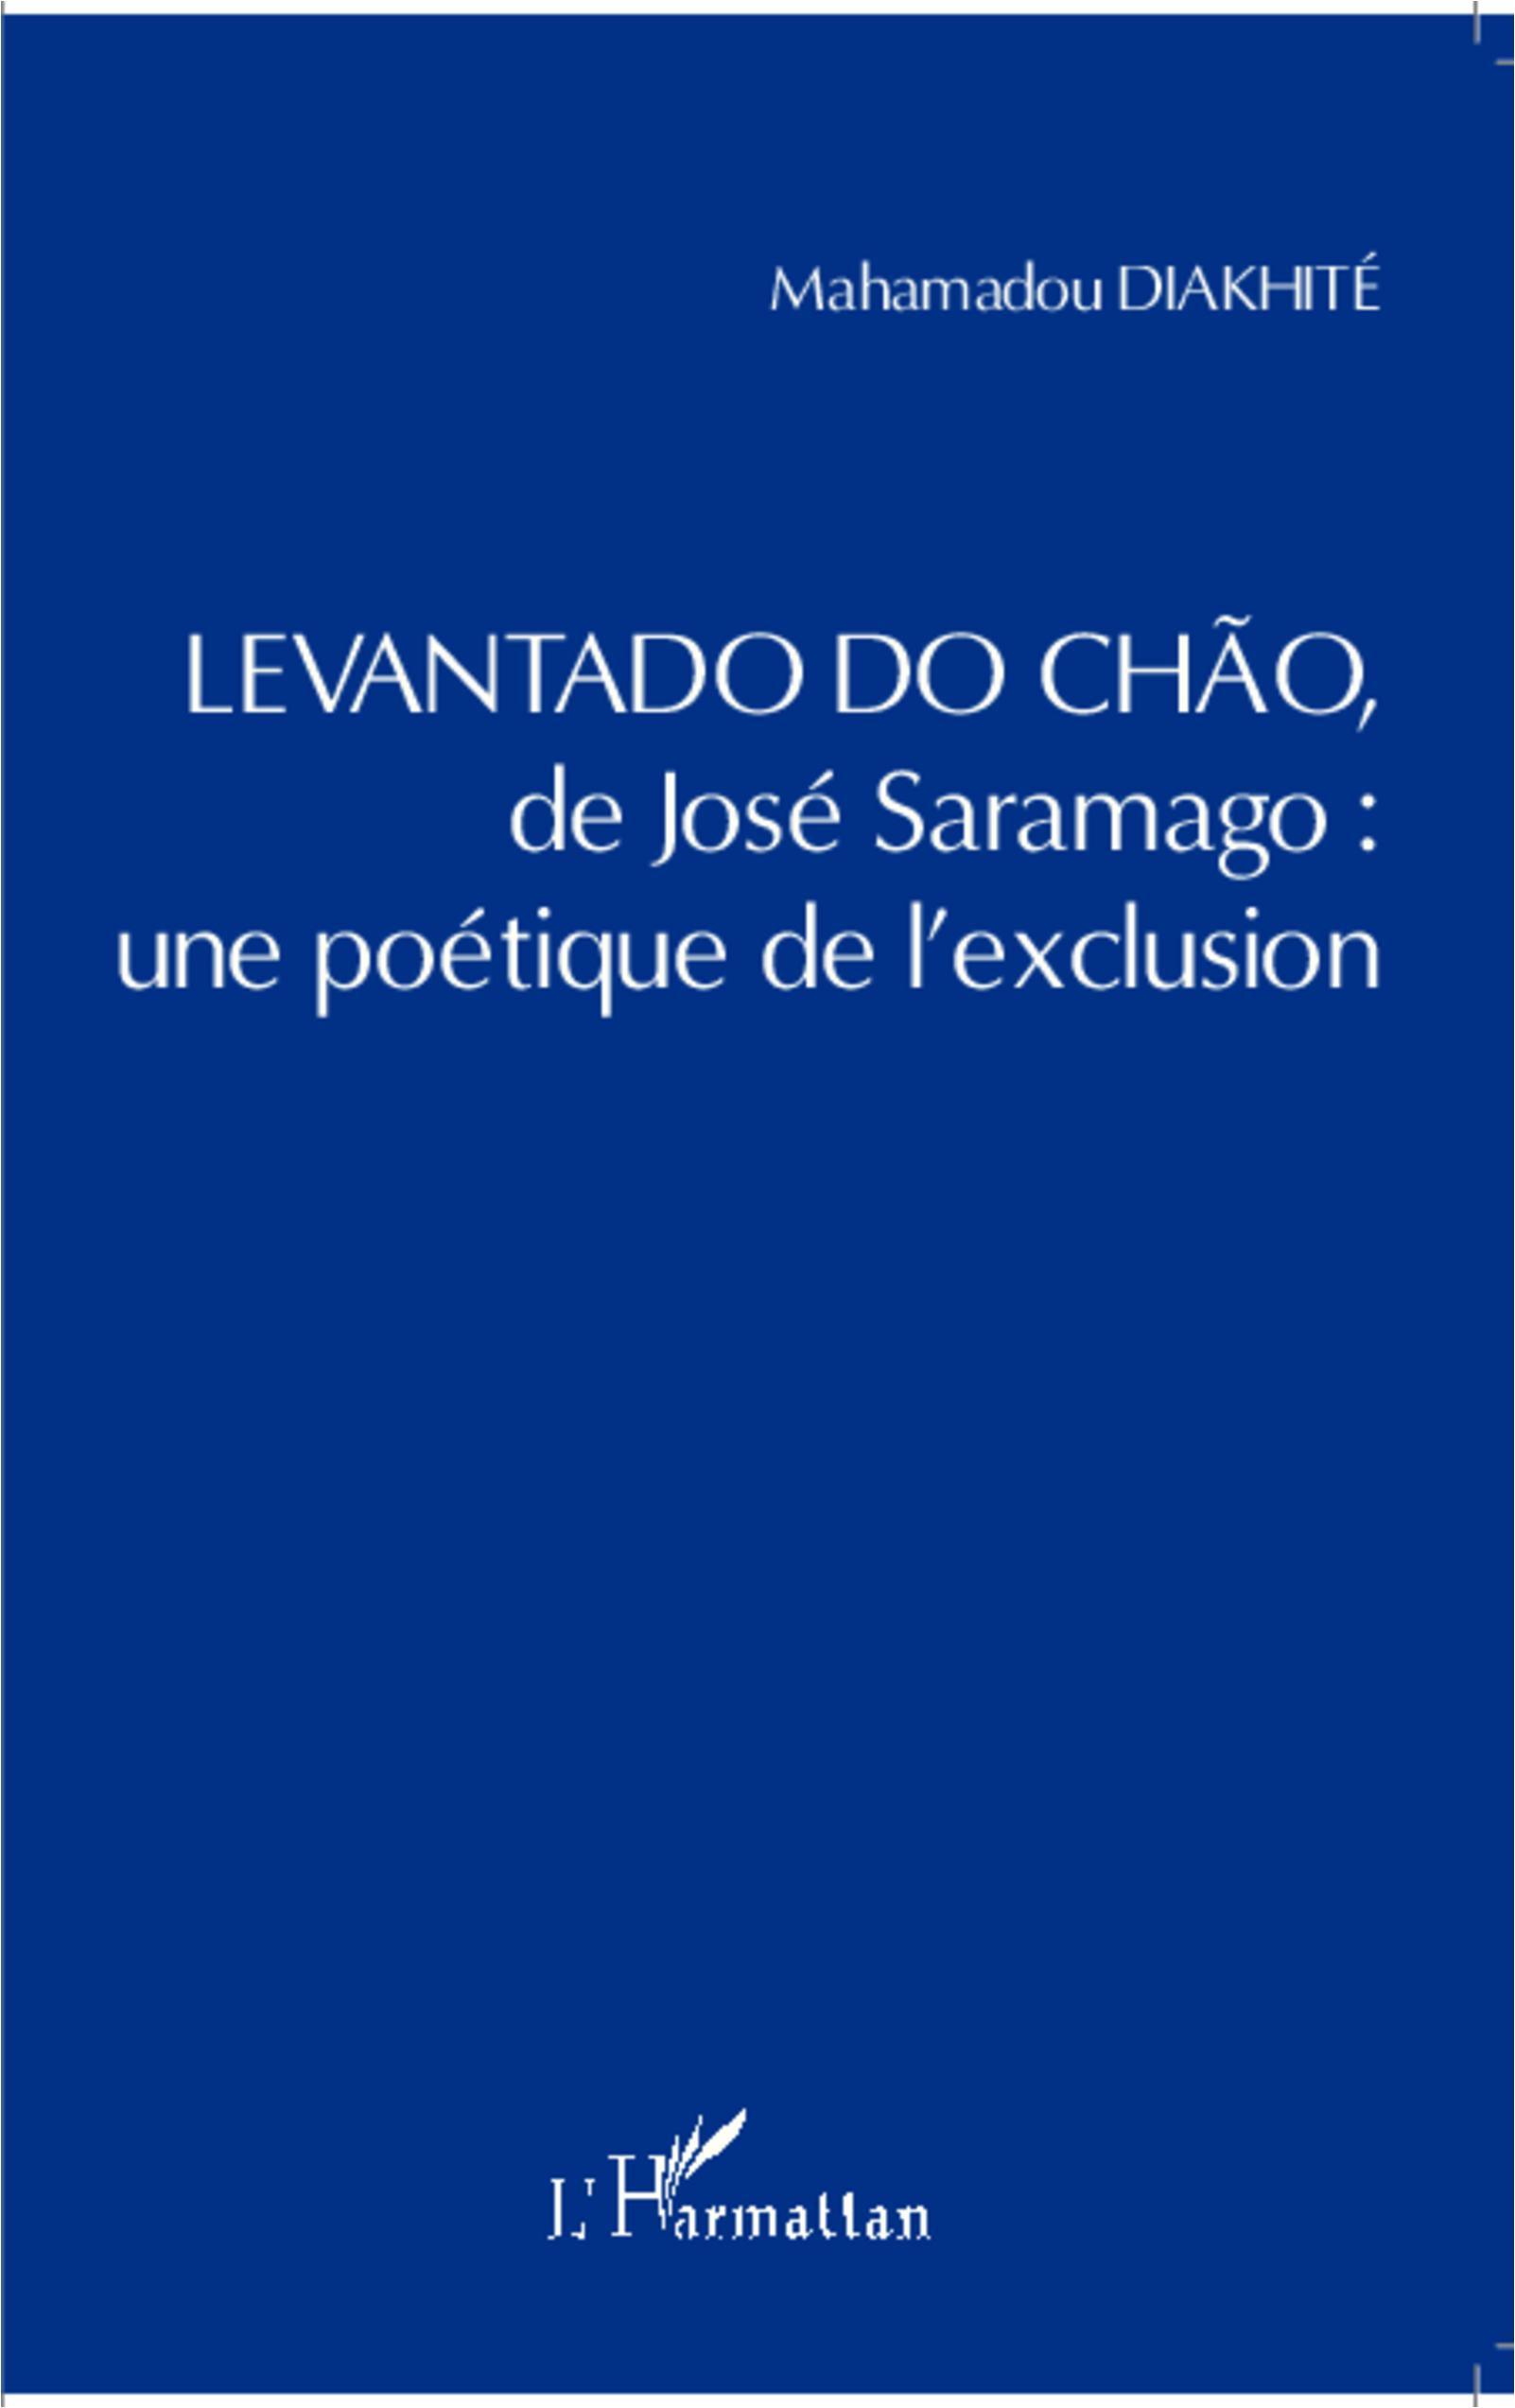 Levantado do Chao de José Saramago : une poétique de l\\ exclusion - Diakhite, Mahamadou